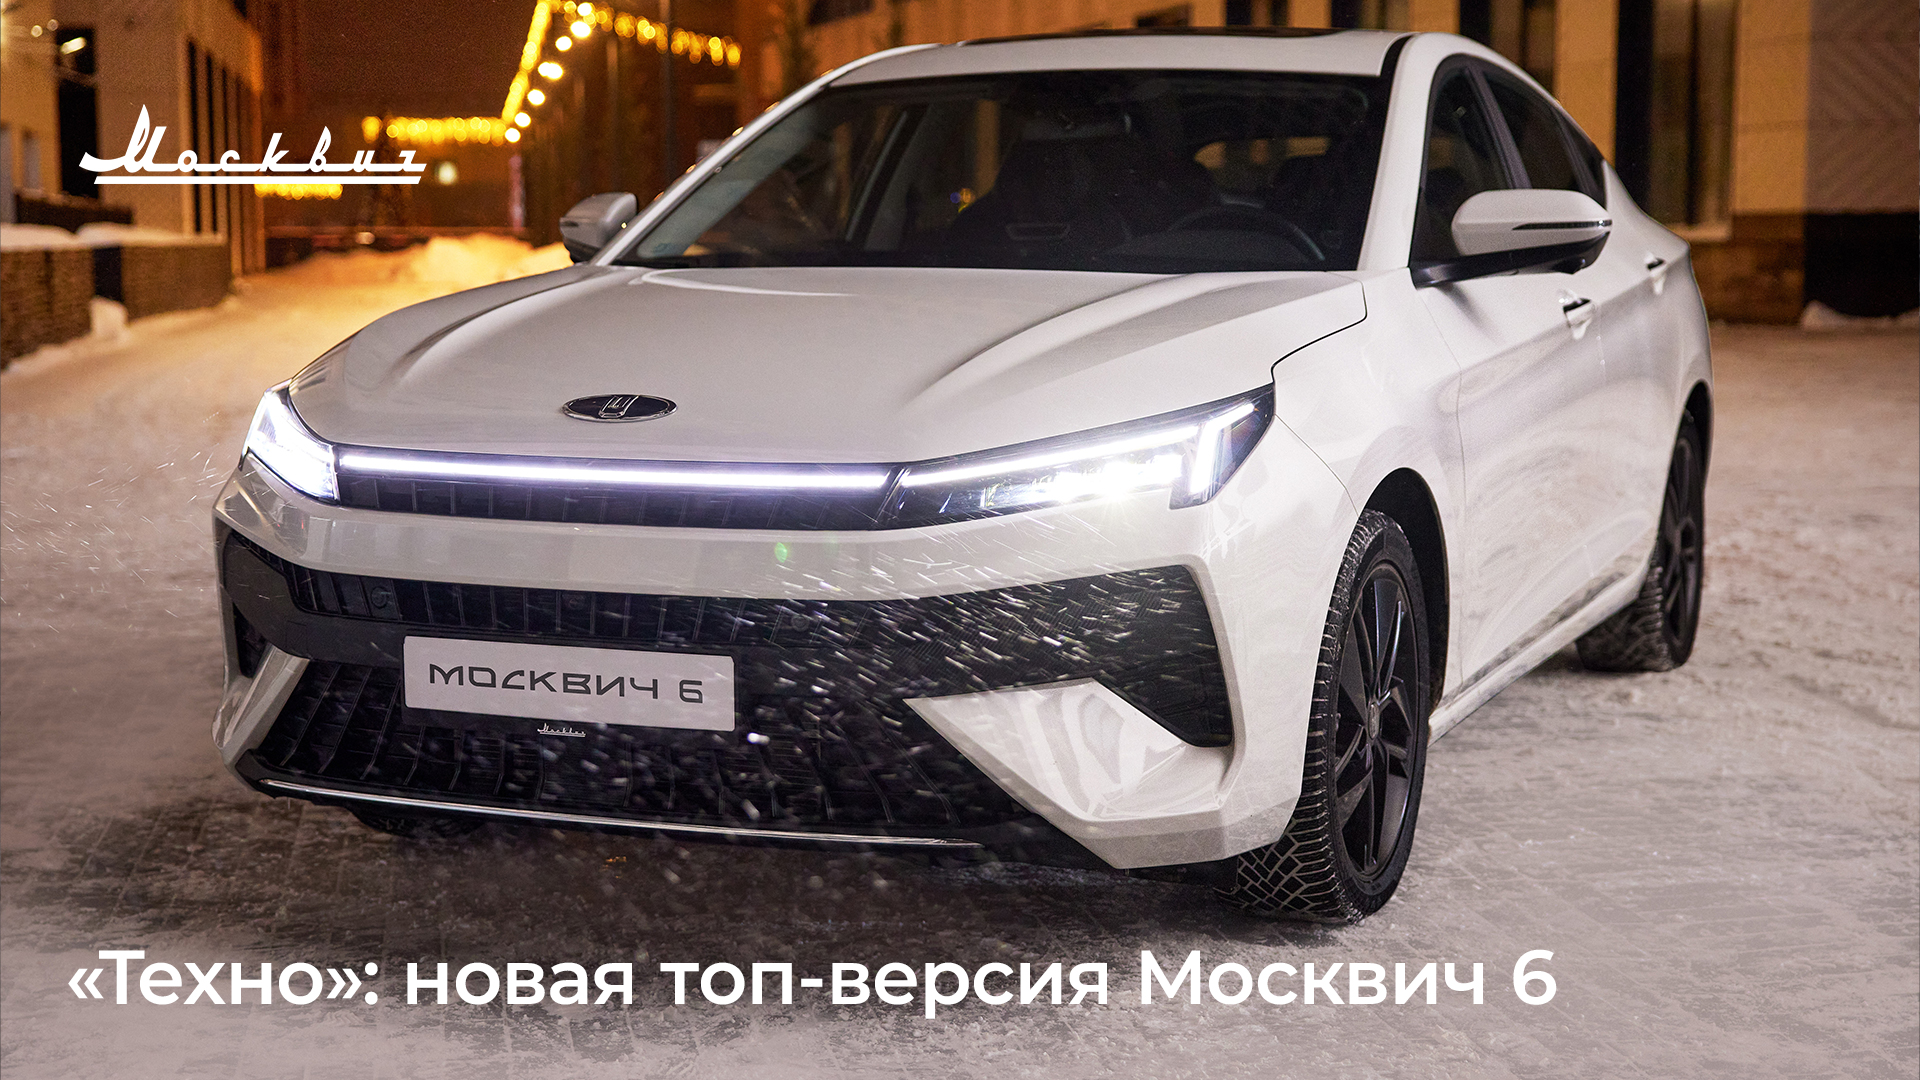 Москвич 6 в новой комплектации «Техно» появится в продаже в начале следующего года